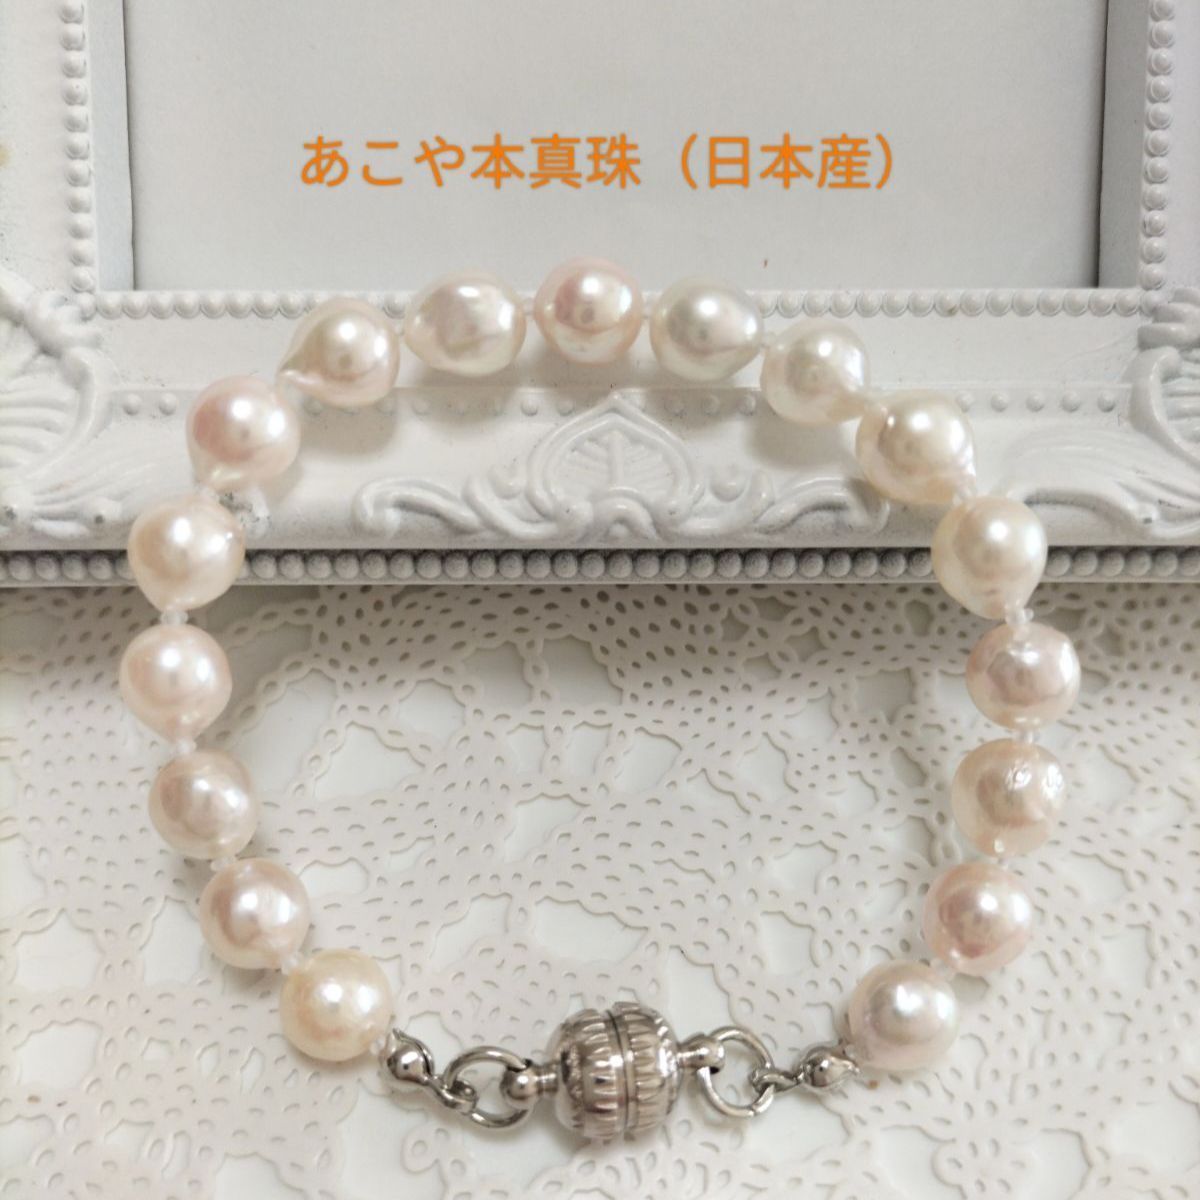 あこや本真珠（日本産）のマグネット式ブレスレット② - メルカリ